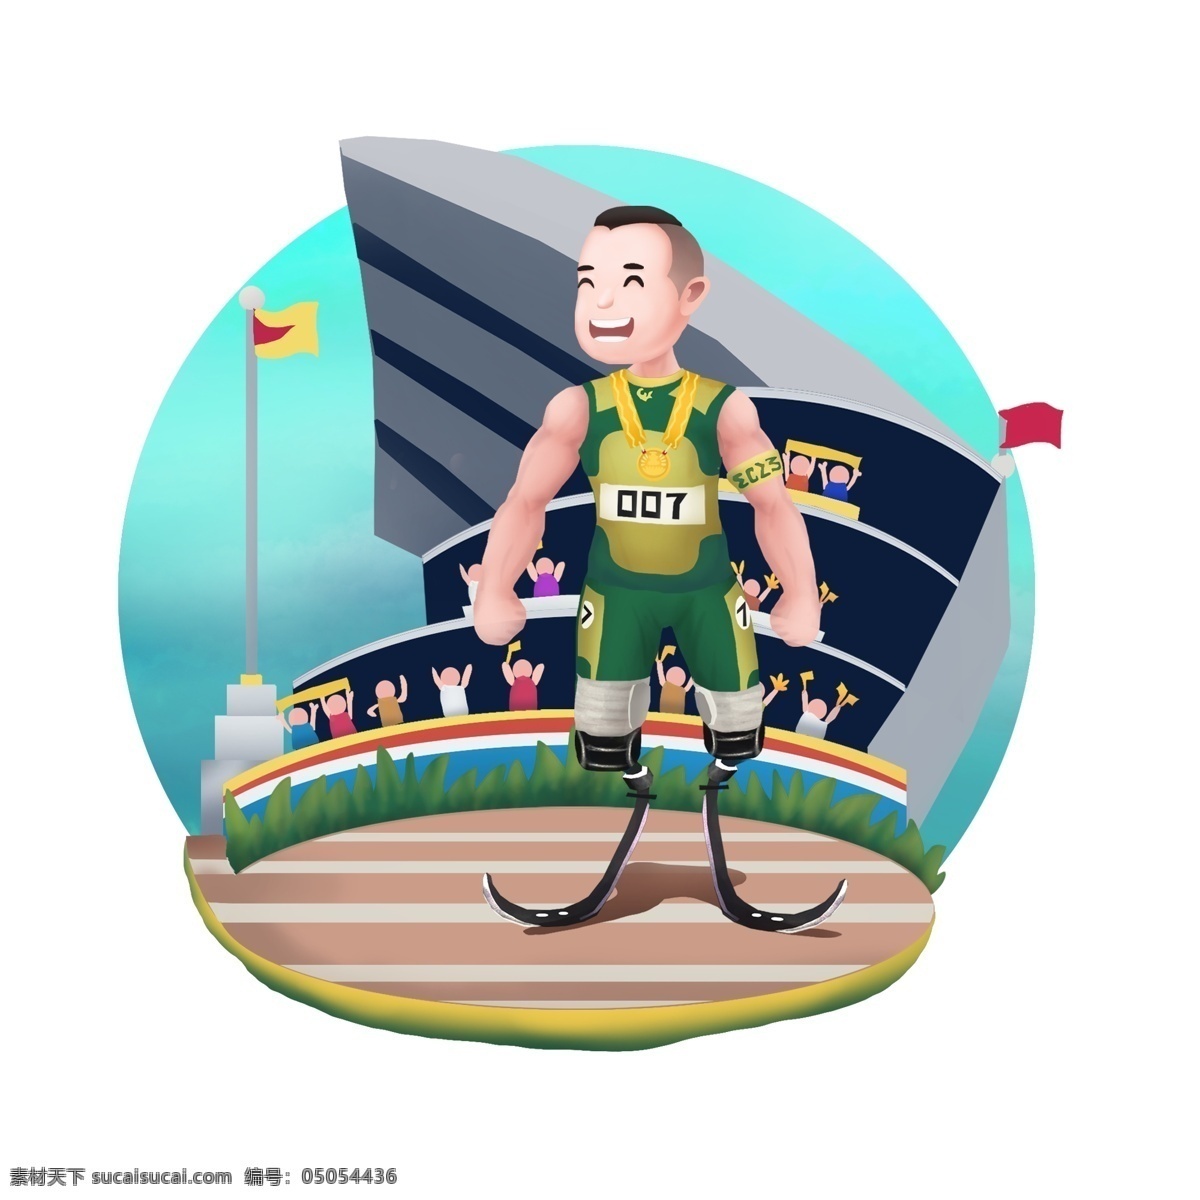 商用 高清 手绘 残疾人 运动员 世界杯 可商用 卡通人物 运动会